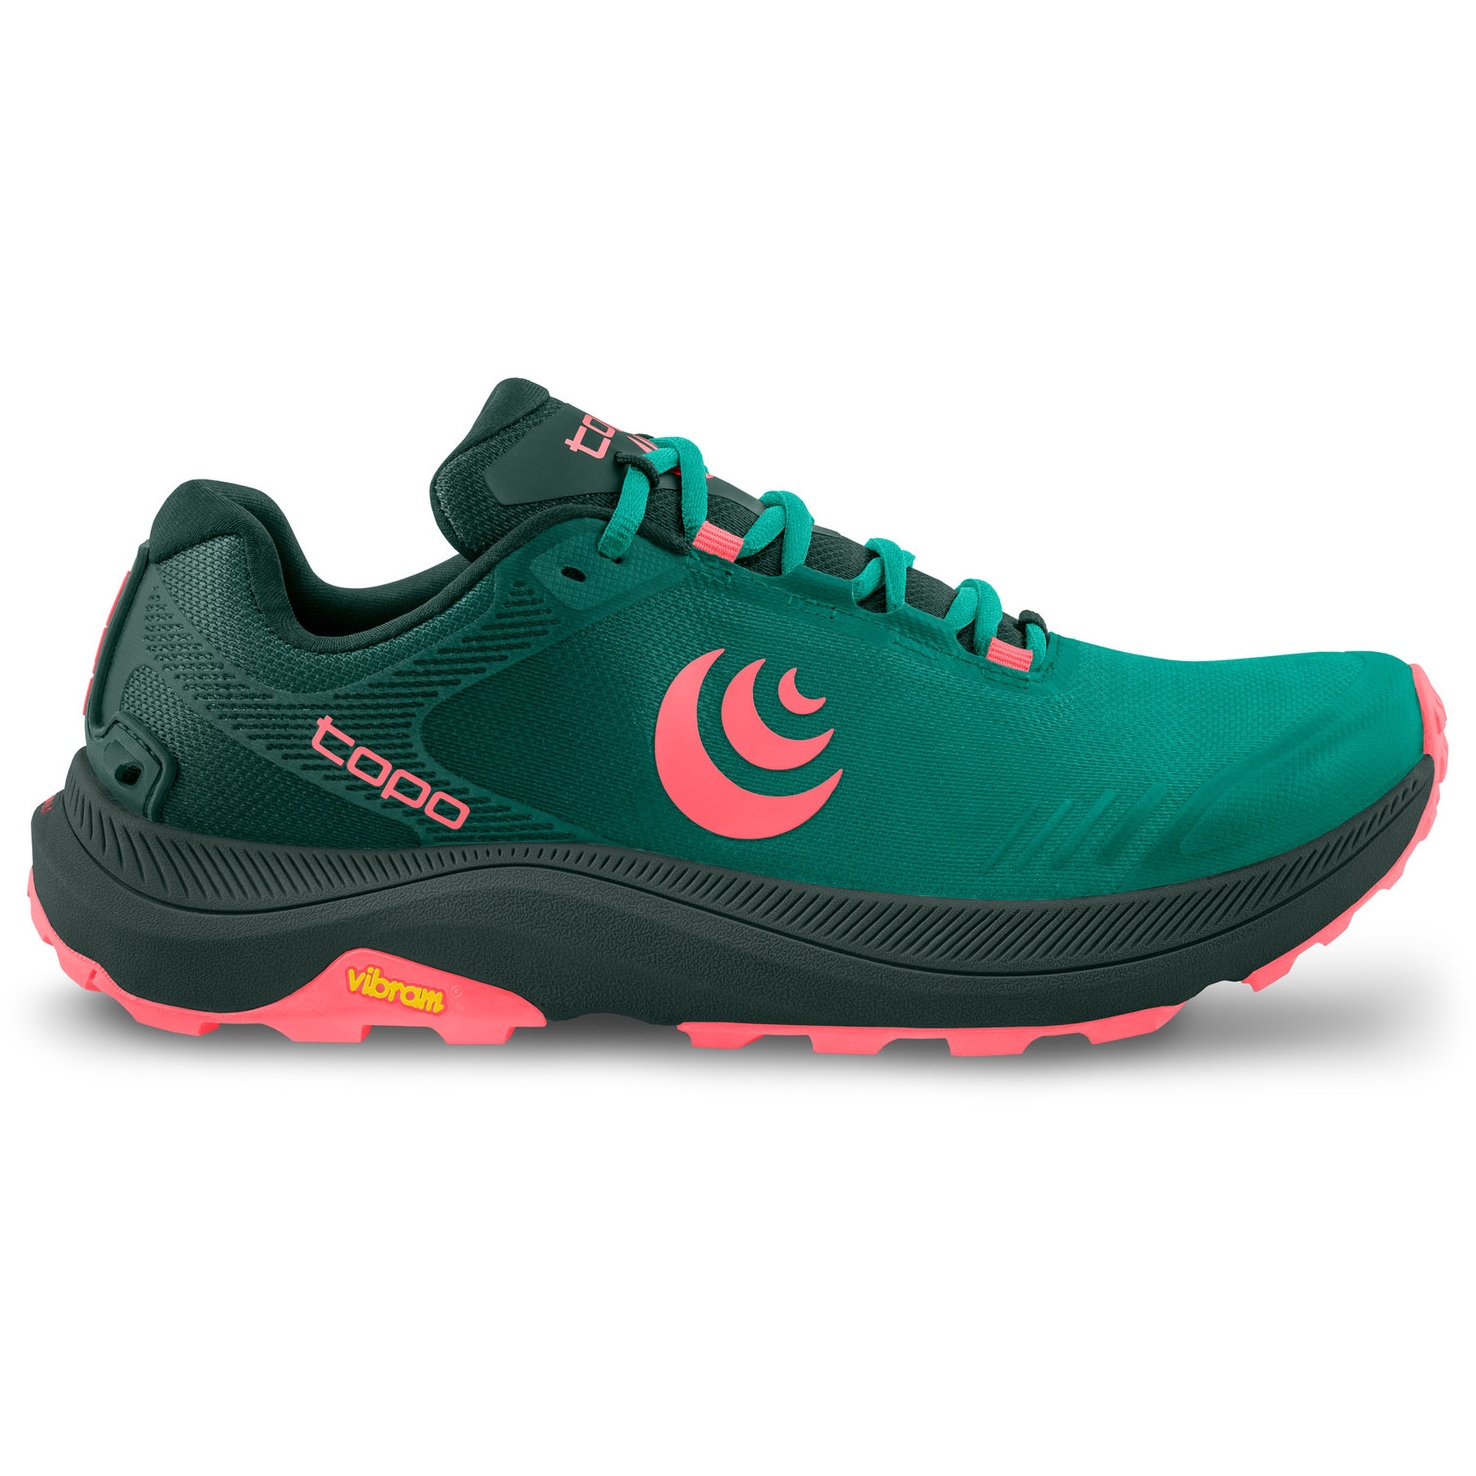 Produktbild von Topo Athletic MT-5 Trail Laufschuhe Damen - emerald/pink